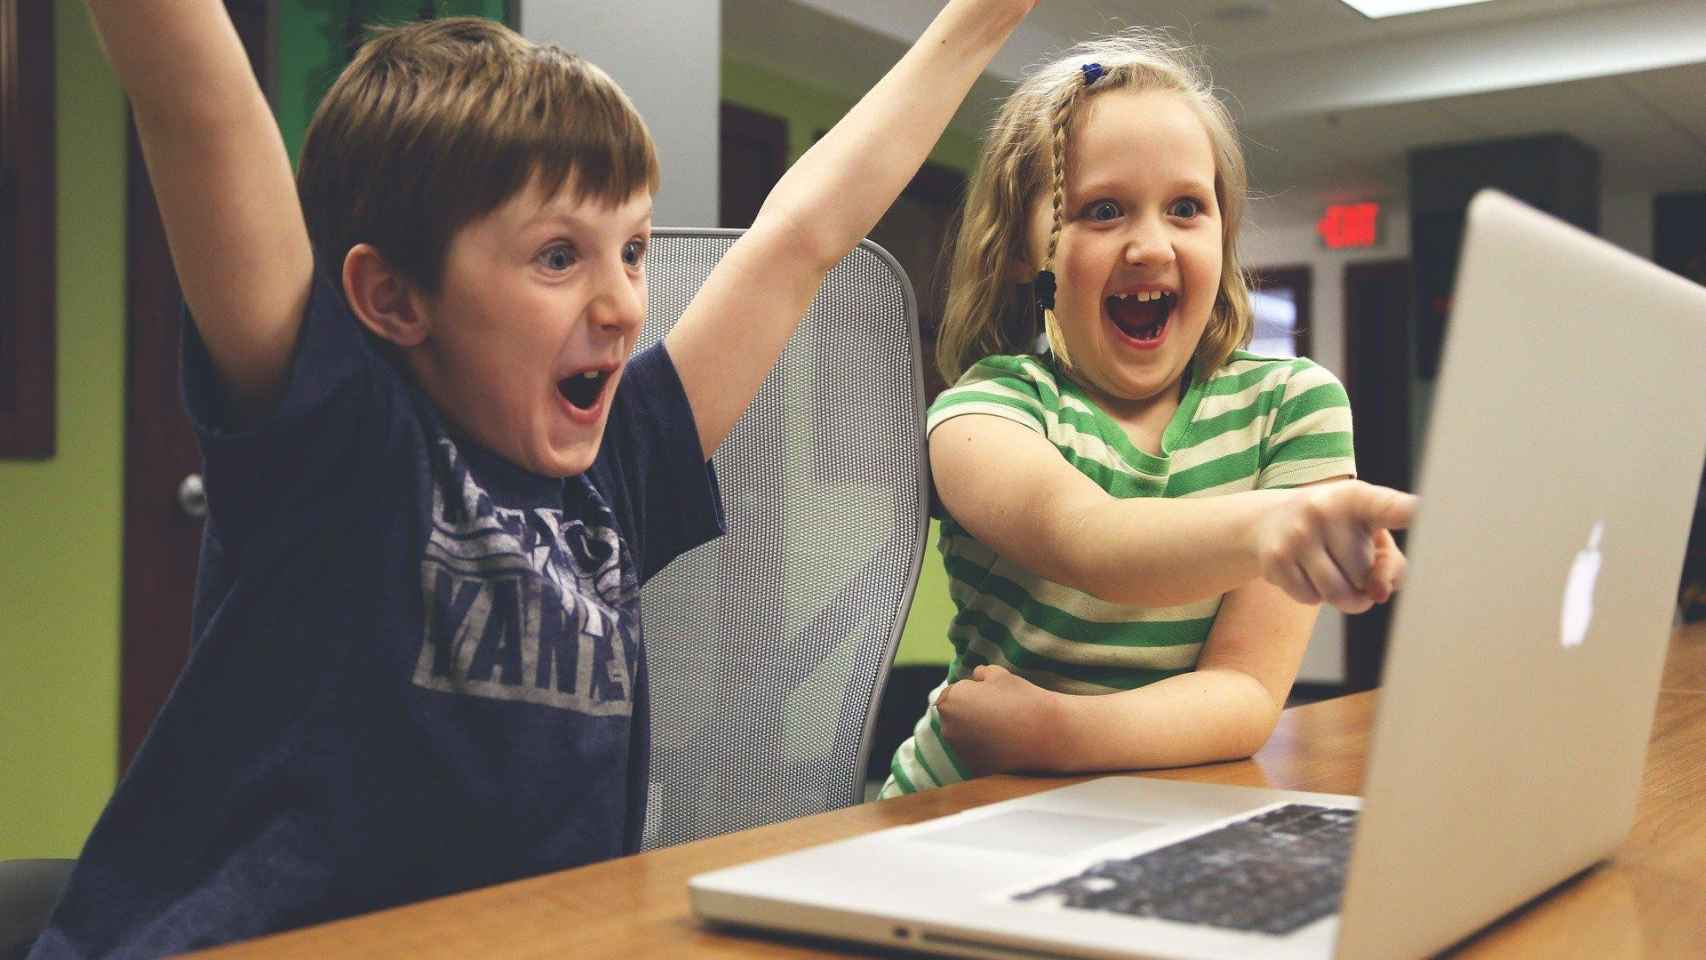 Dos niños jugando a videojuegos en un ordenador / CG